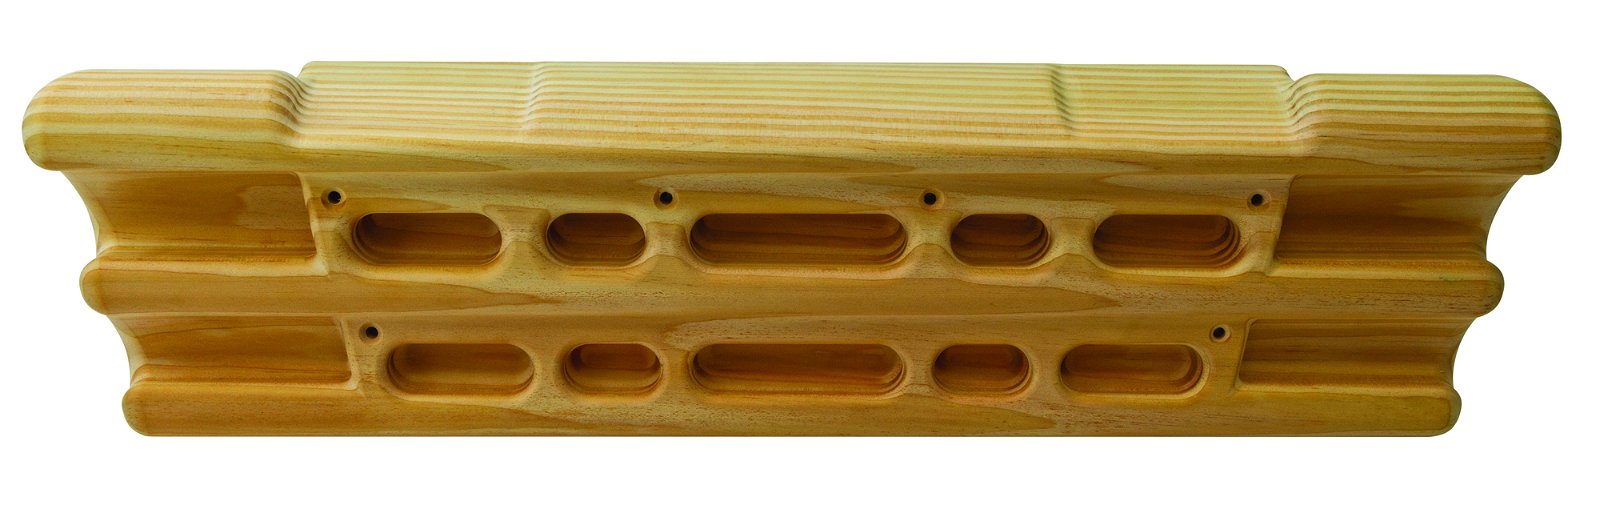 Metolius Wood Grip Compact II board